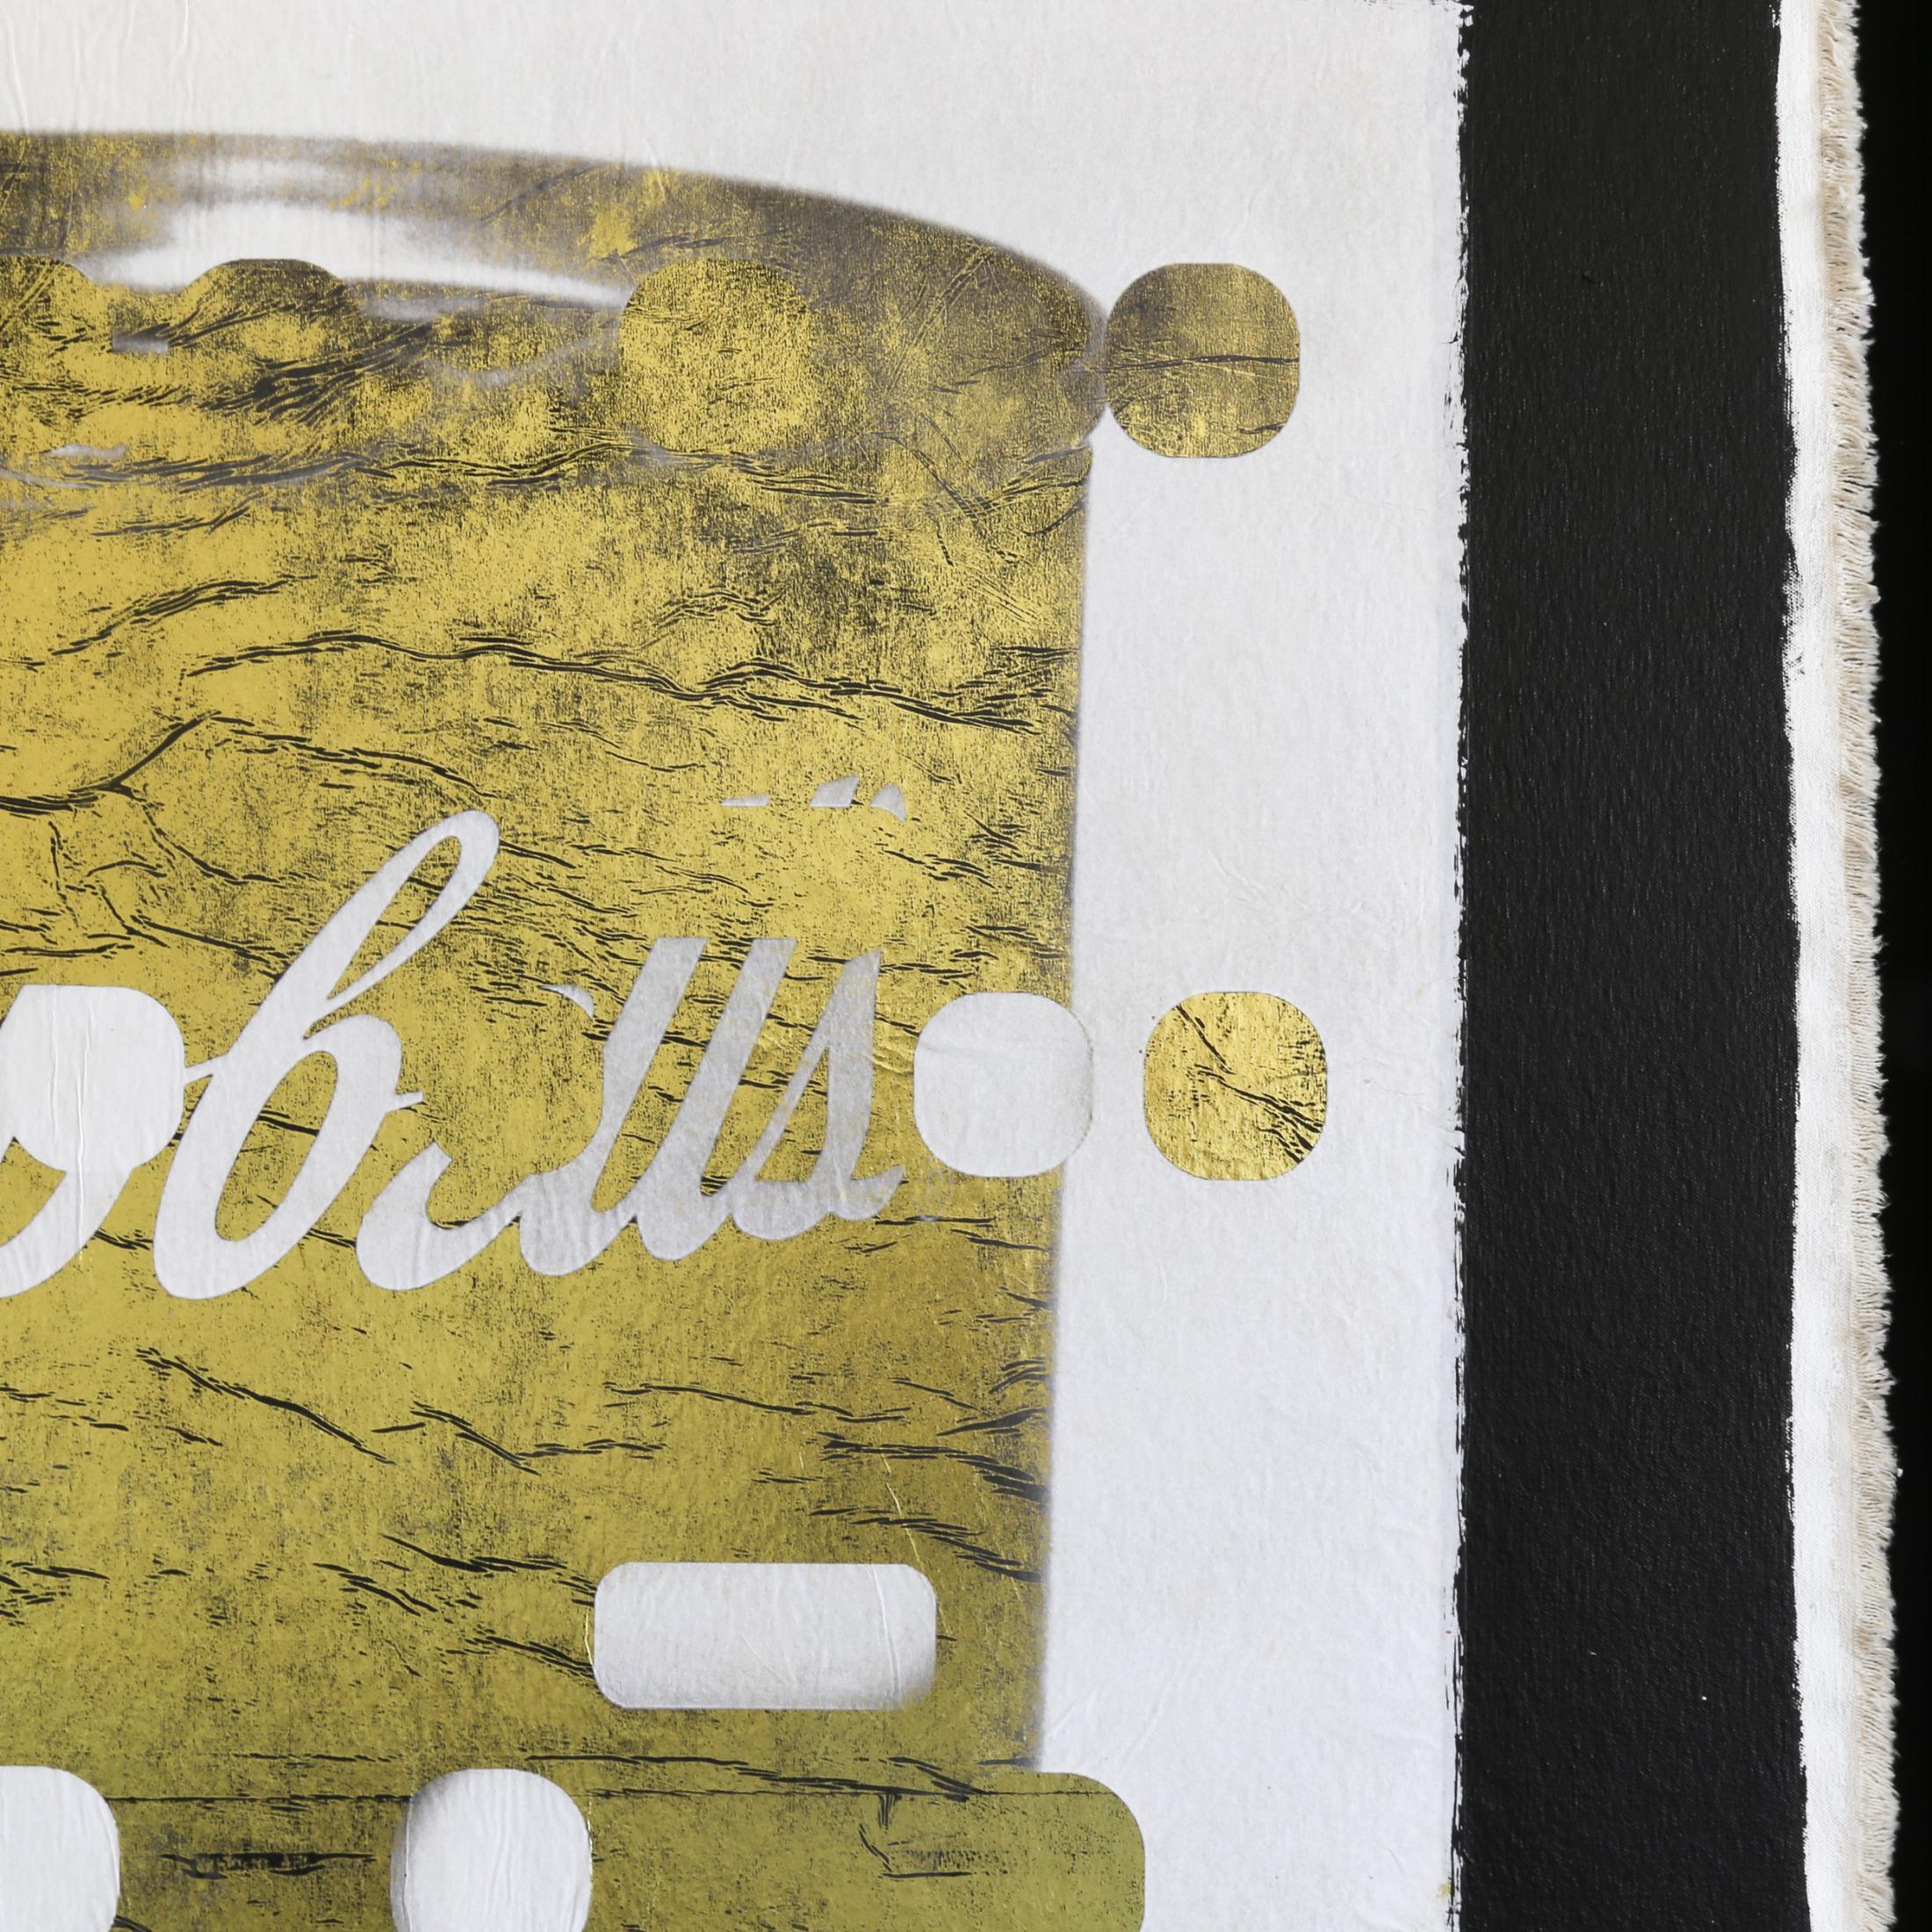 IT'S ALL DERIVATIVE : CAMPBELL'S SOUP, LIGHT GOLD de l'artiste Bill Claps est une œuvre d'expression abstraite contemporaine de couleur or, blanc et noir représentant une boîte de soupe Campbell, technique mixte sur toile mesurant 59 x